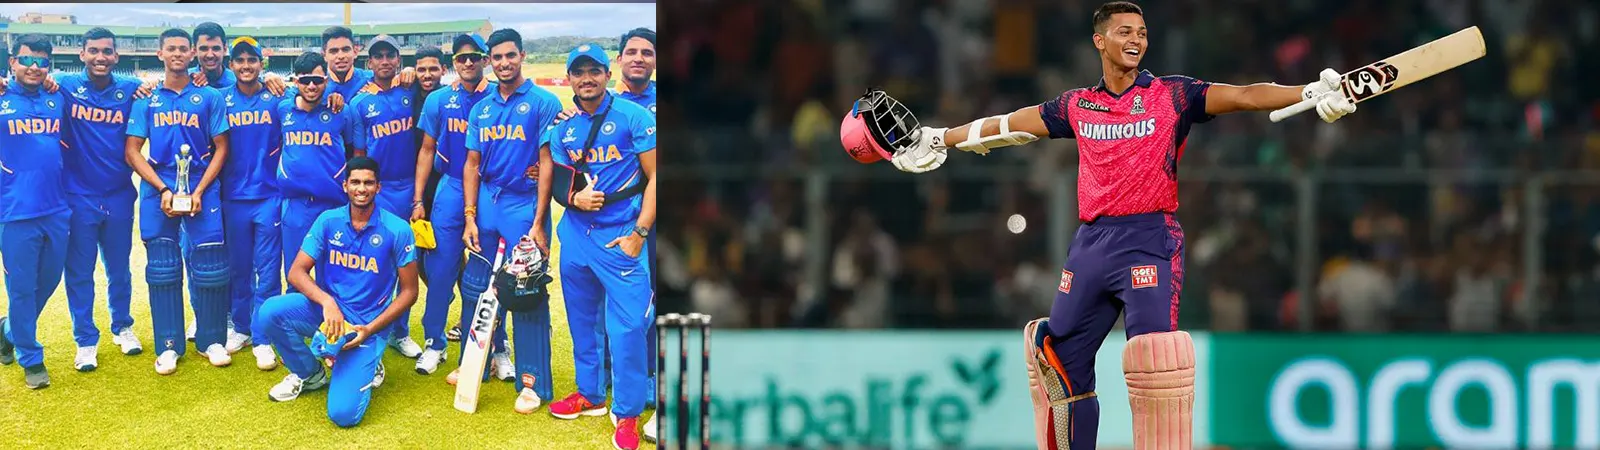 India vs West Indies : भारतीय टीम तीसरे T20 मैच में इज्जत बचाने को उतारेगी हुकुम का इक्का!!! यह बल्लेबाज पलट देगा मैच